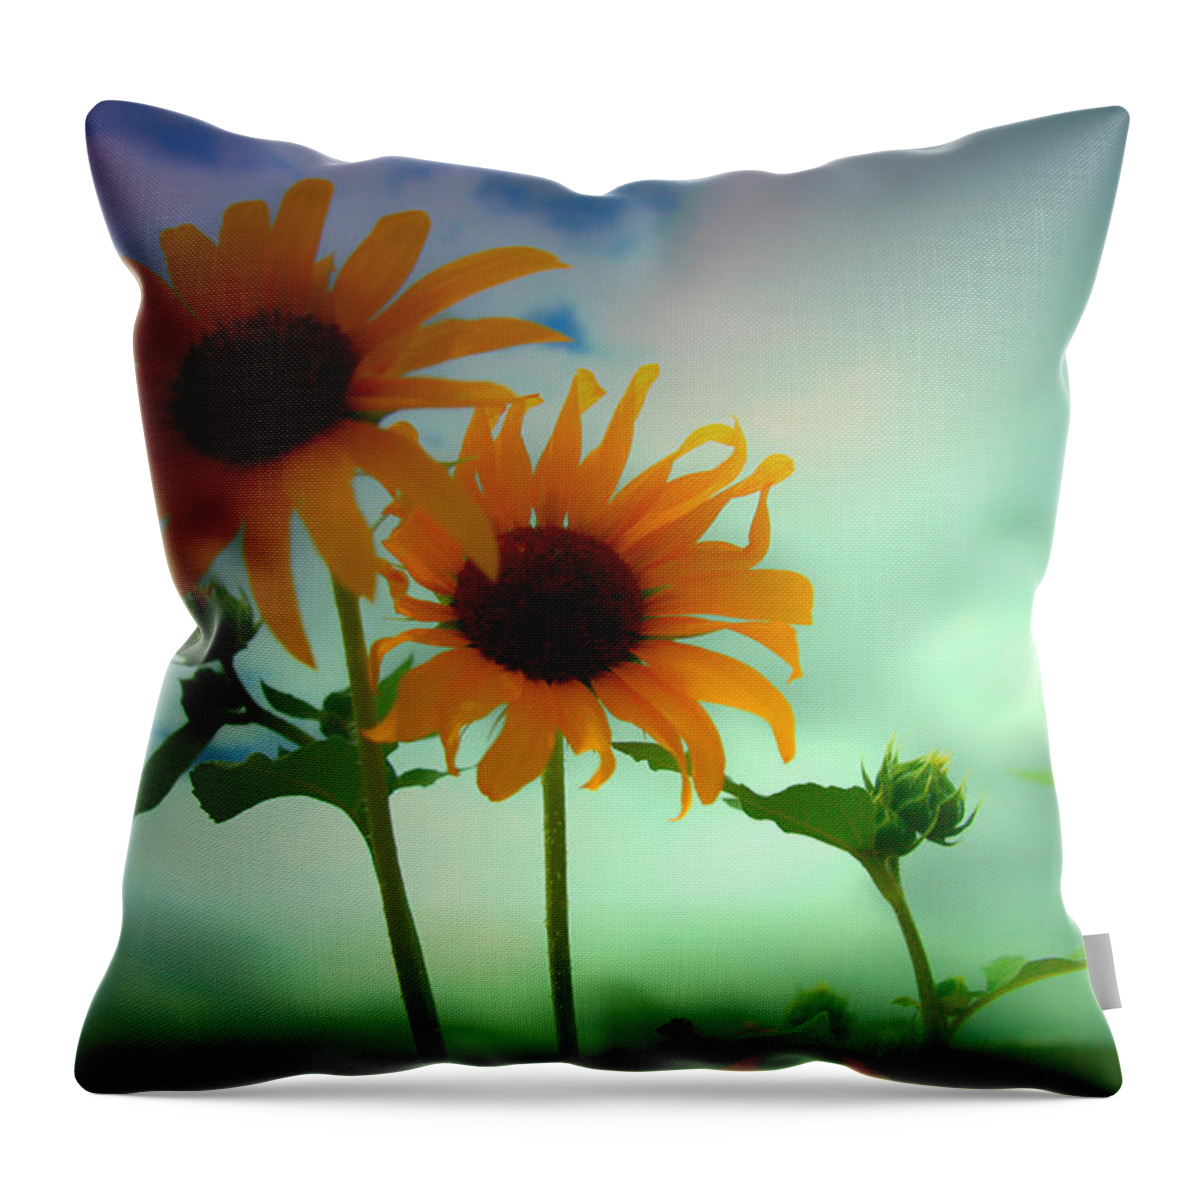 Sunflower Throw Pillow featuring the photograph Asphalt Lemonade by Mark Ross